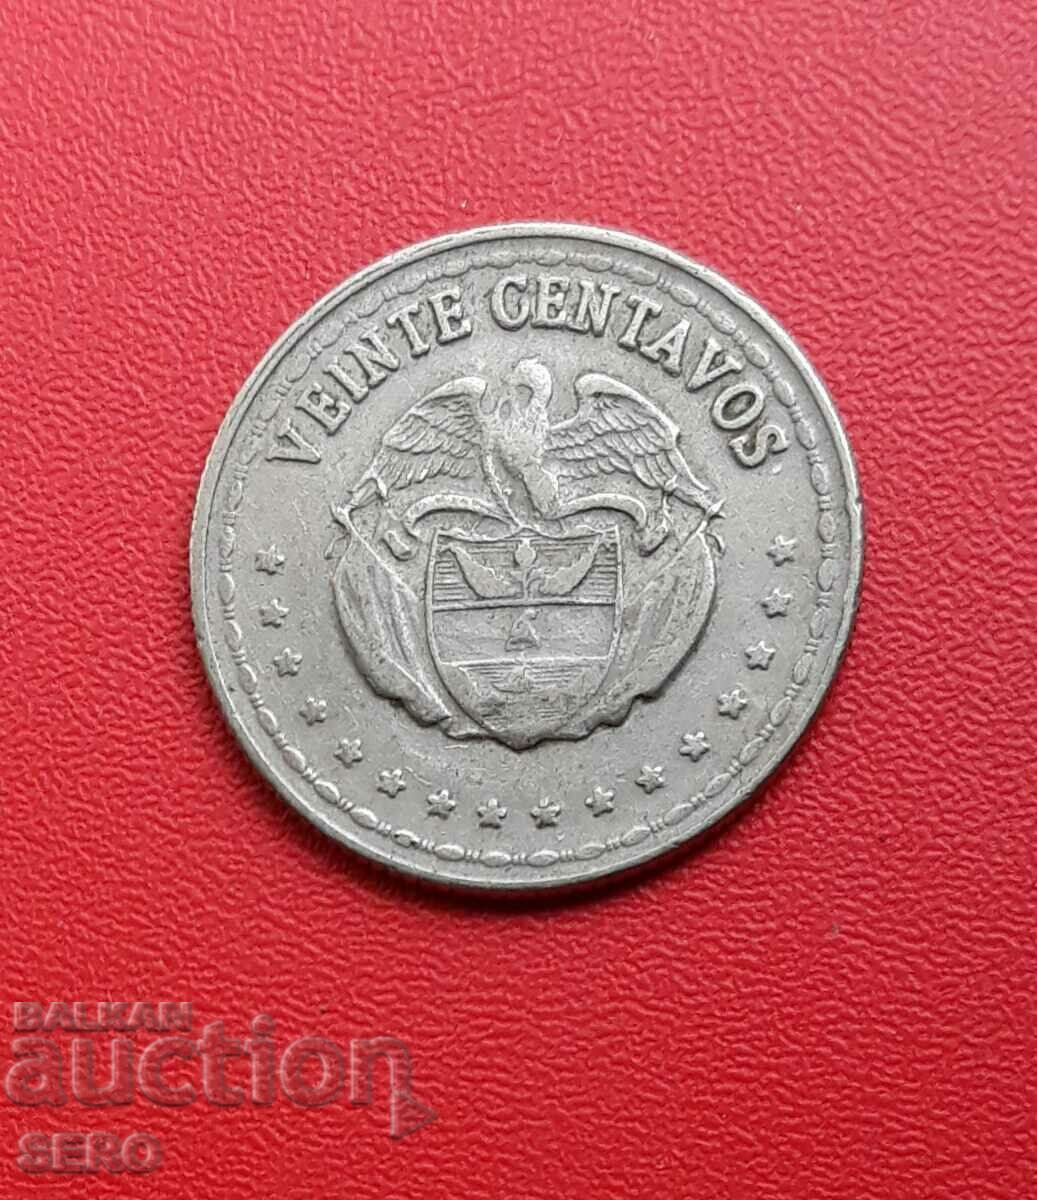 Colombia-20 centavos 1965